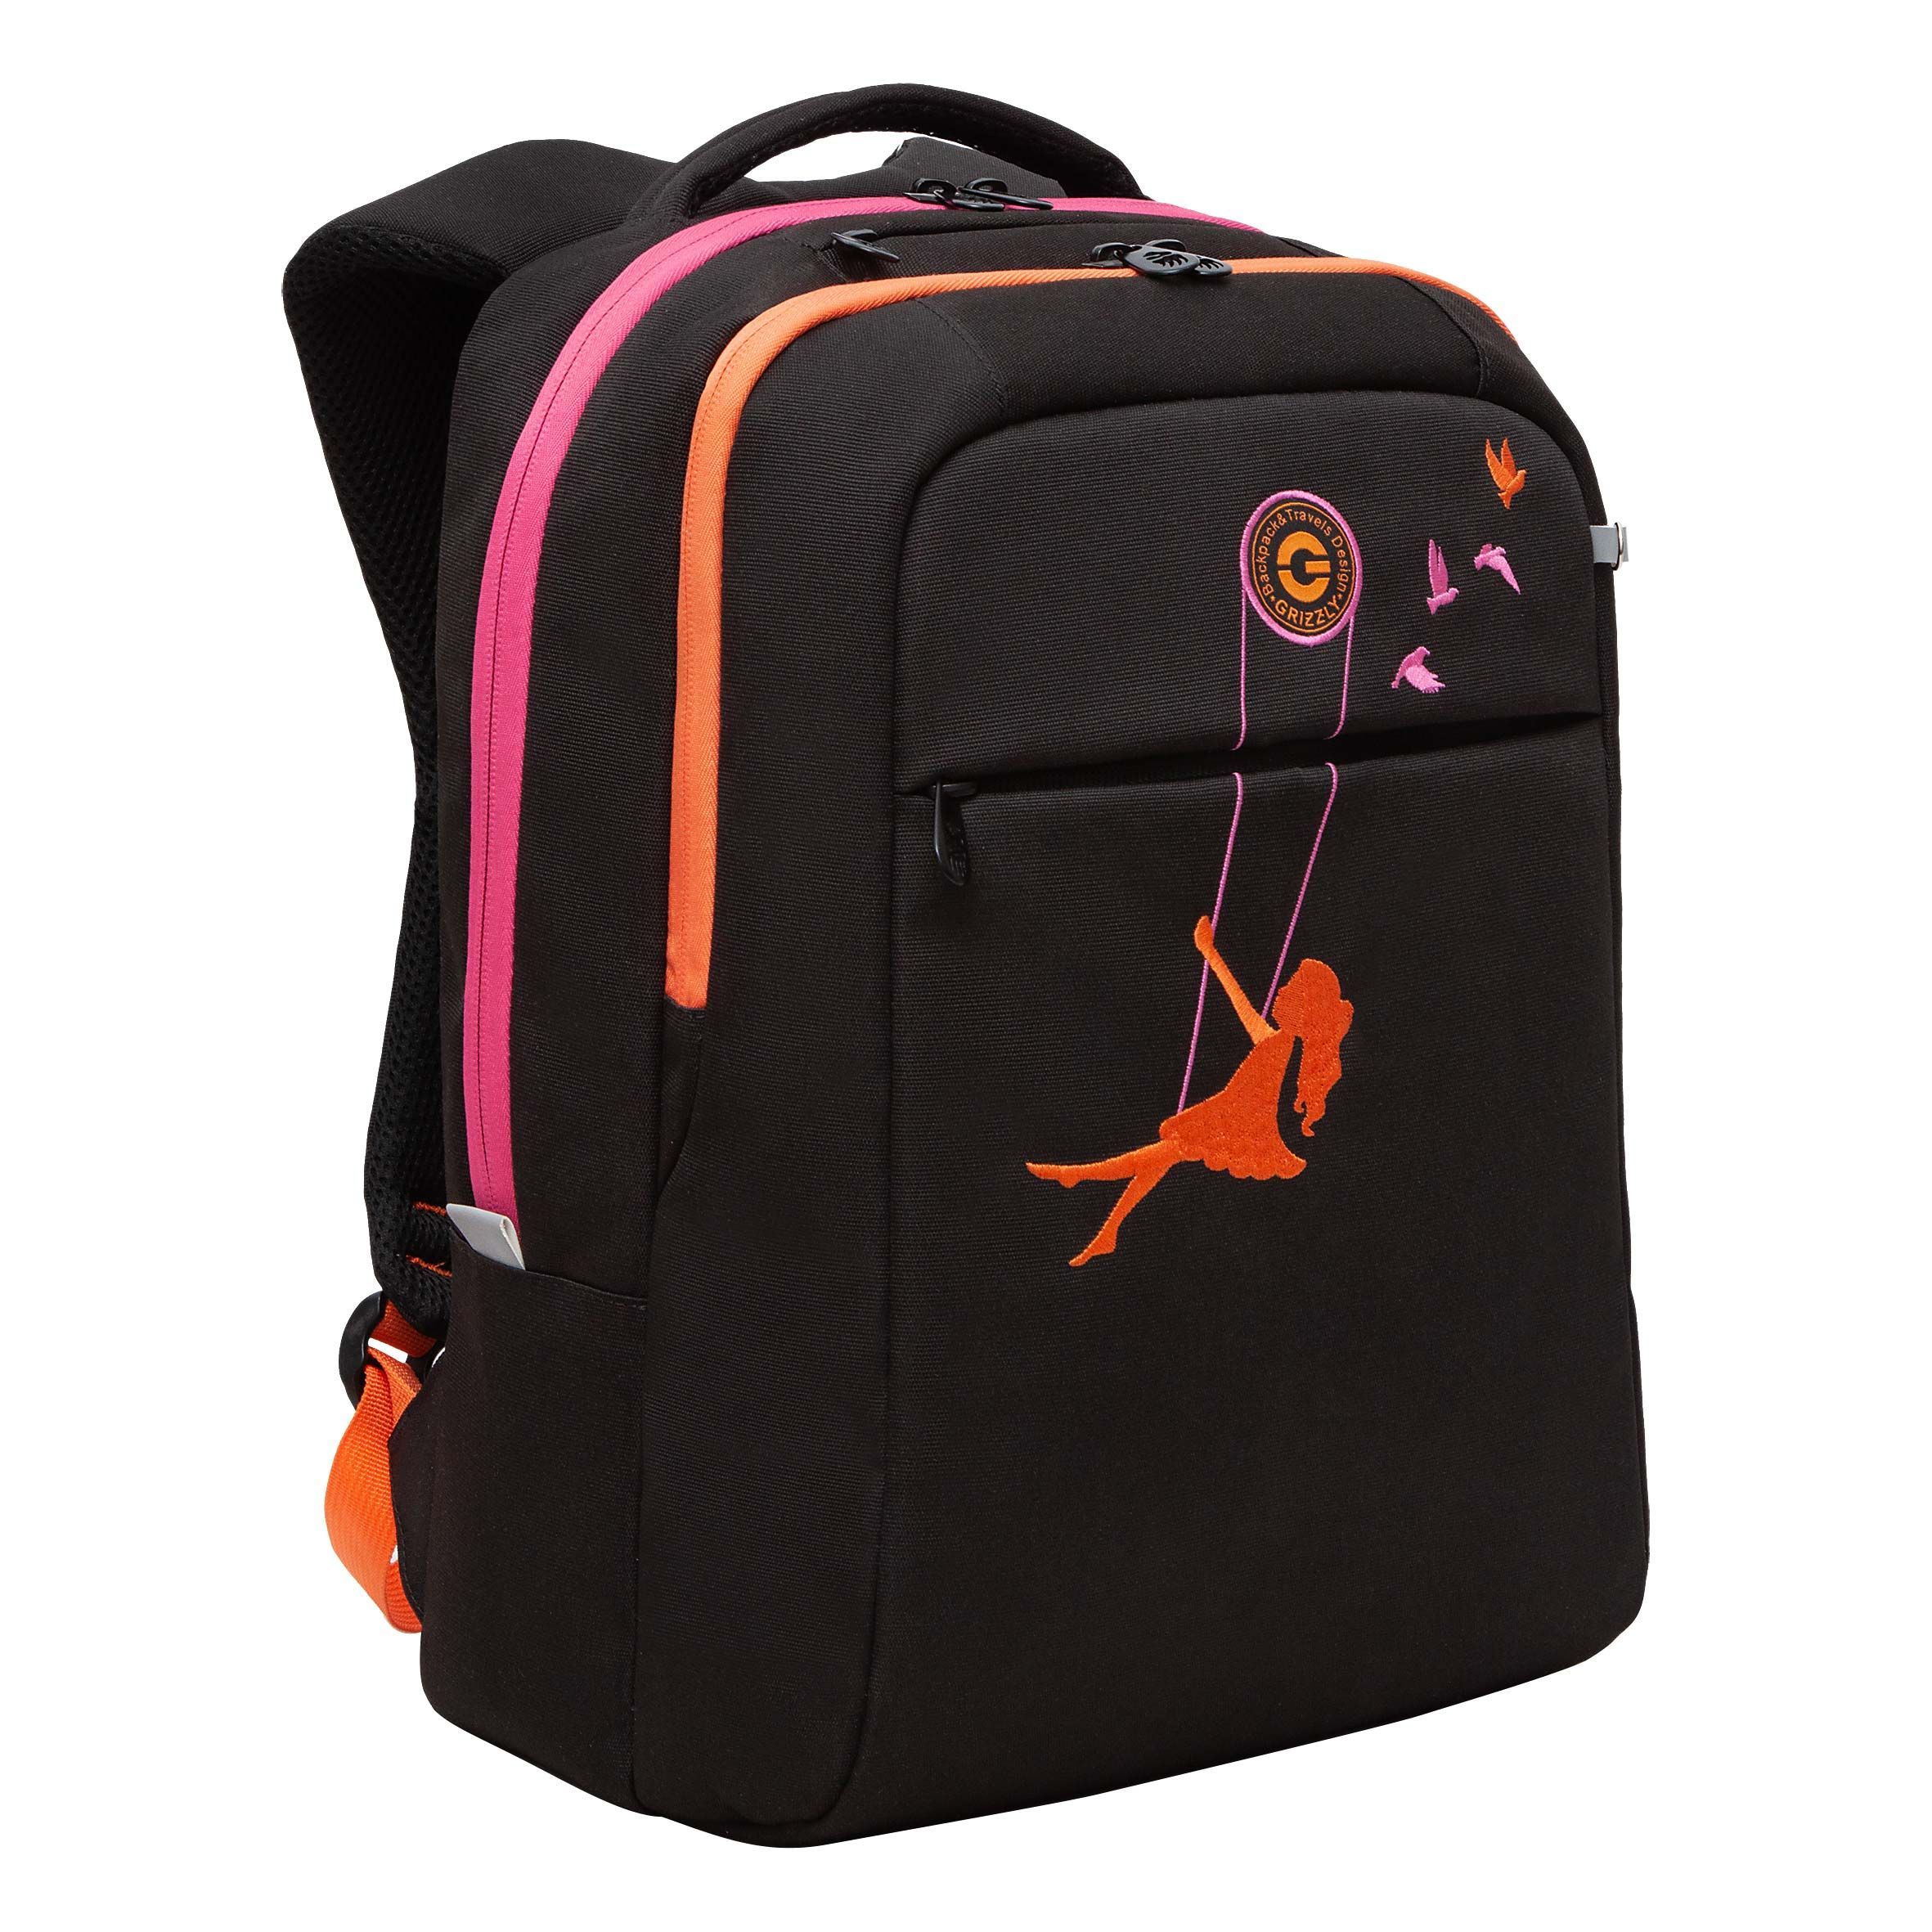 Рюкзак GRIZZLY RD-344-2 молодежный на каждый день вместительный черный-оранжевый рюкзак молодежный grizzly анатомический оранжевый rb 456 4 1